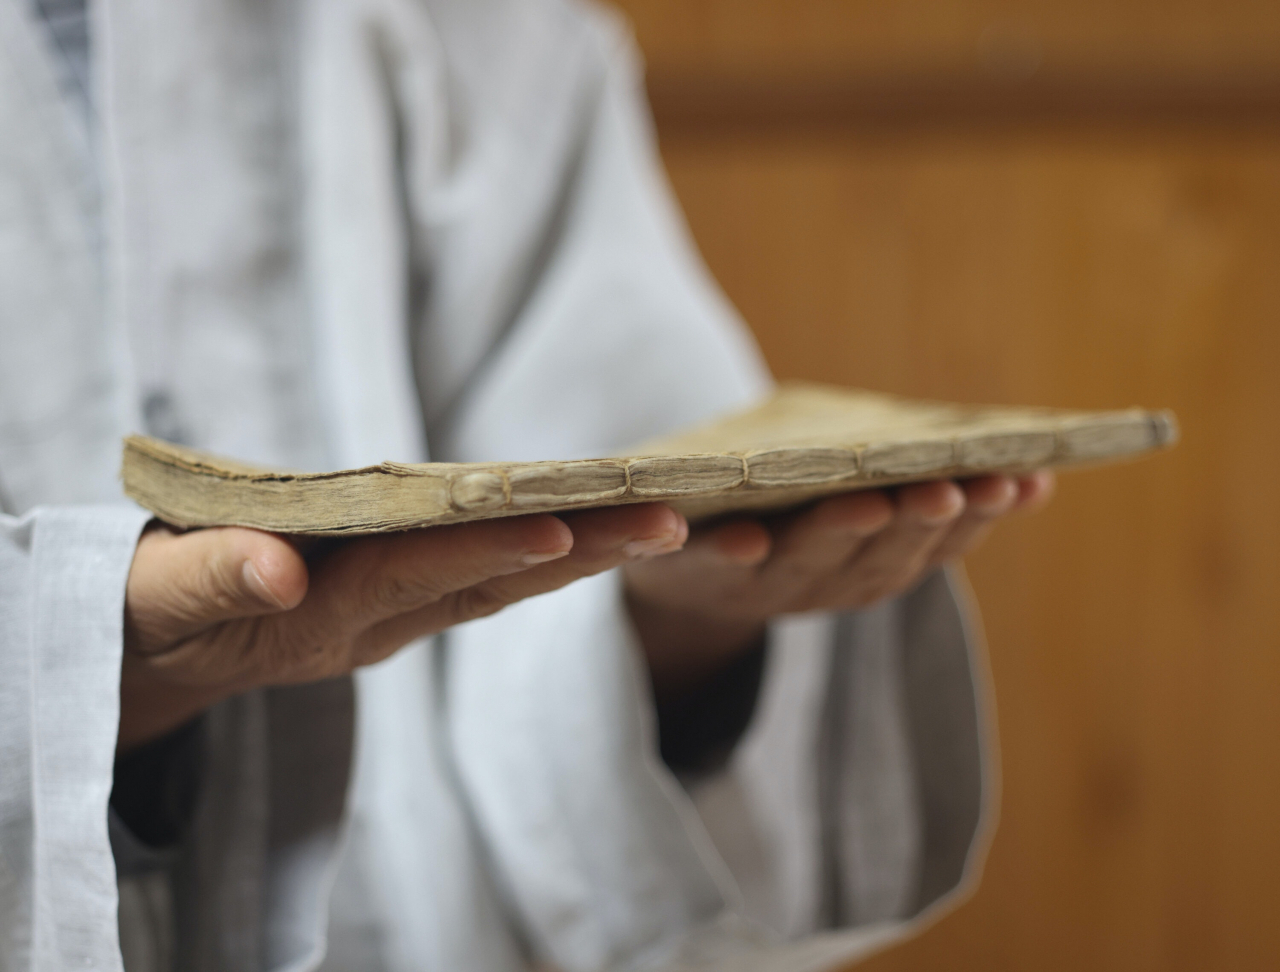 더 벤.  원진은 경남 양산에서 현존하는 가장 오래된 고려 활자 증도가라고 하는 책을 소장하고 있다.  (사진 © 강형원)